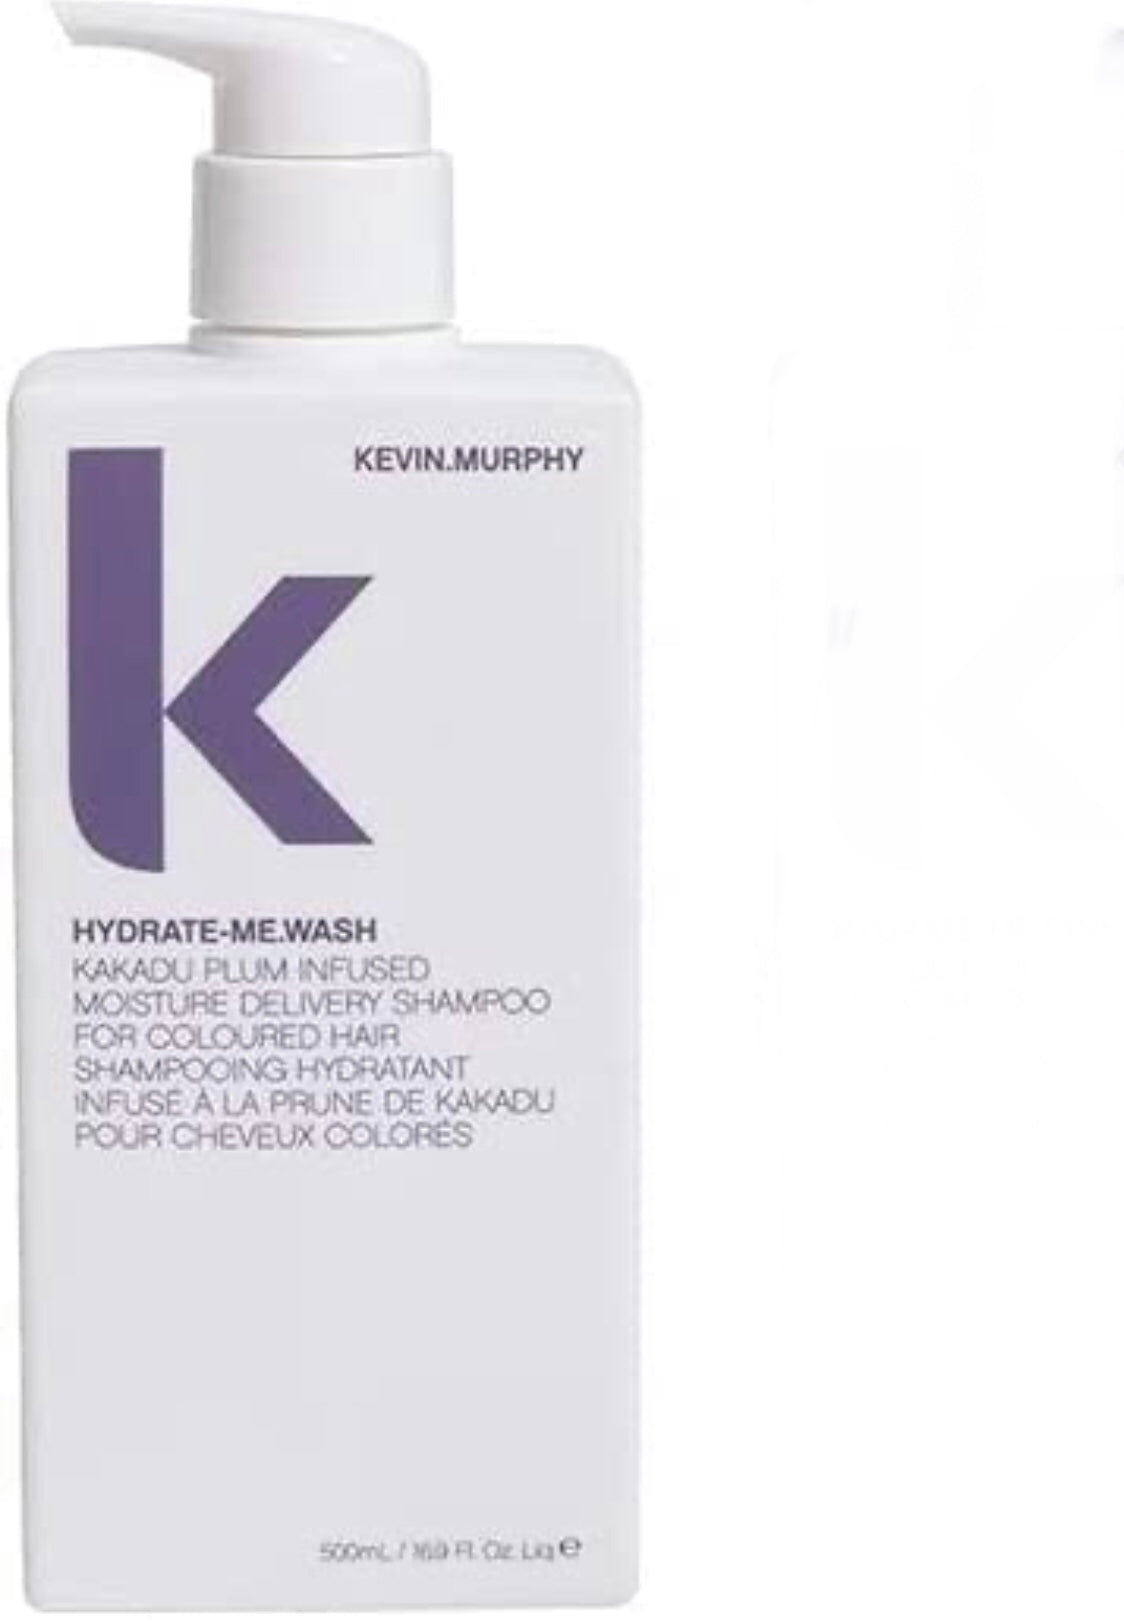 Kevin.Murphy - Hydrate-me.Wash shampoo 16.9 fl. oz. / 500 ml